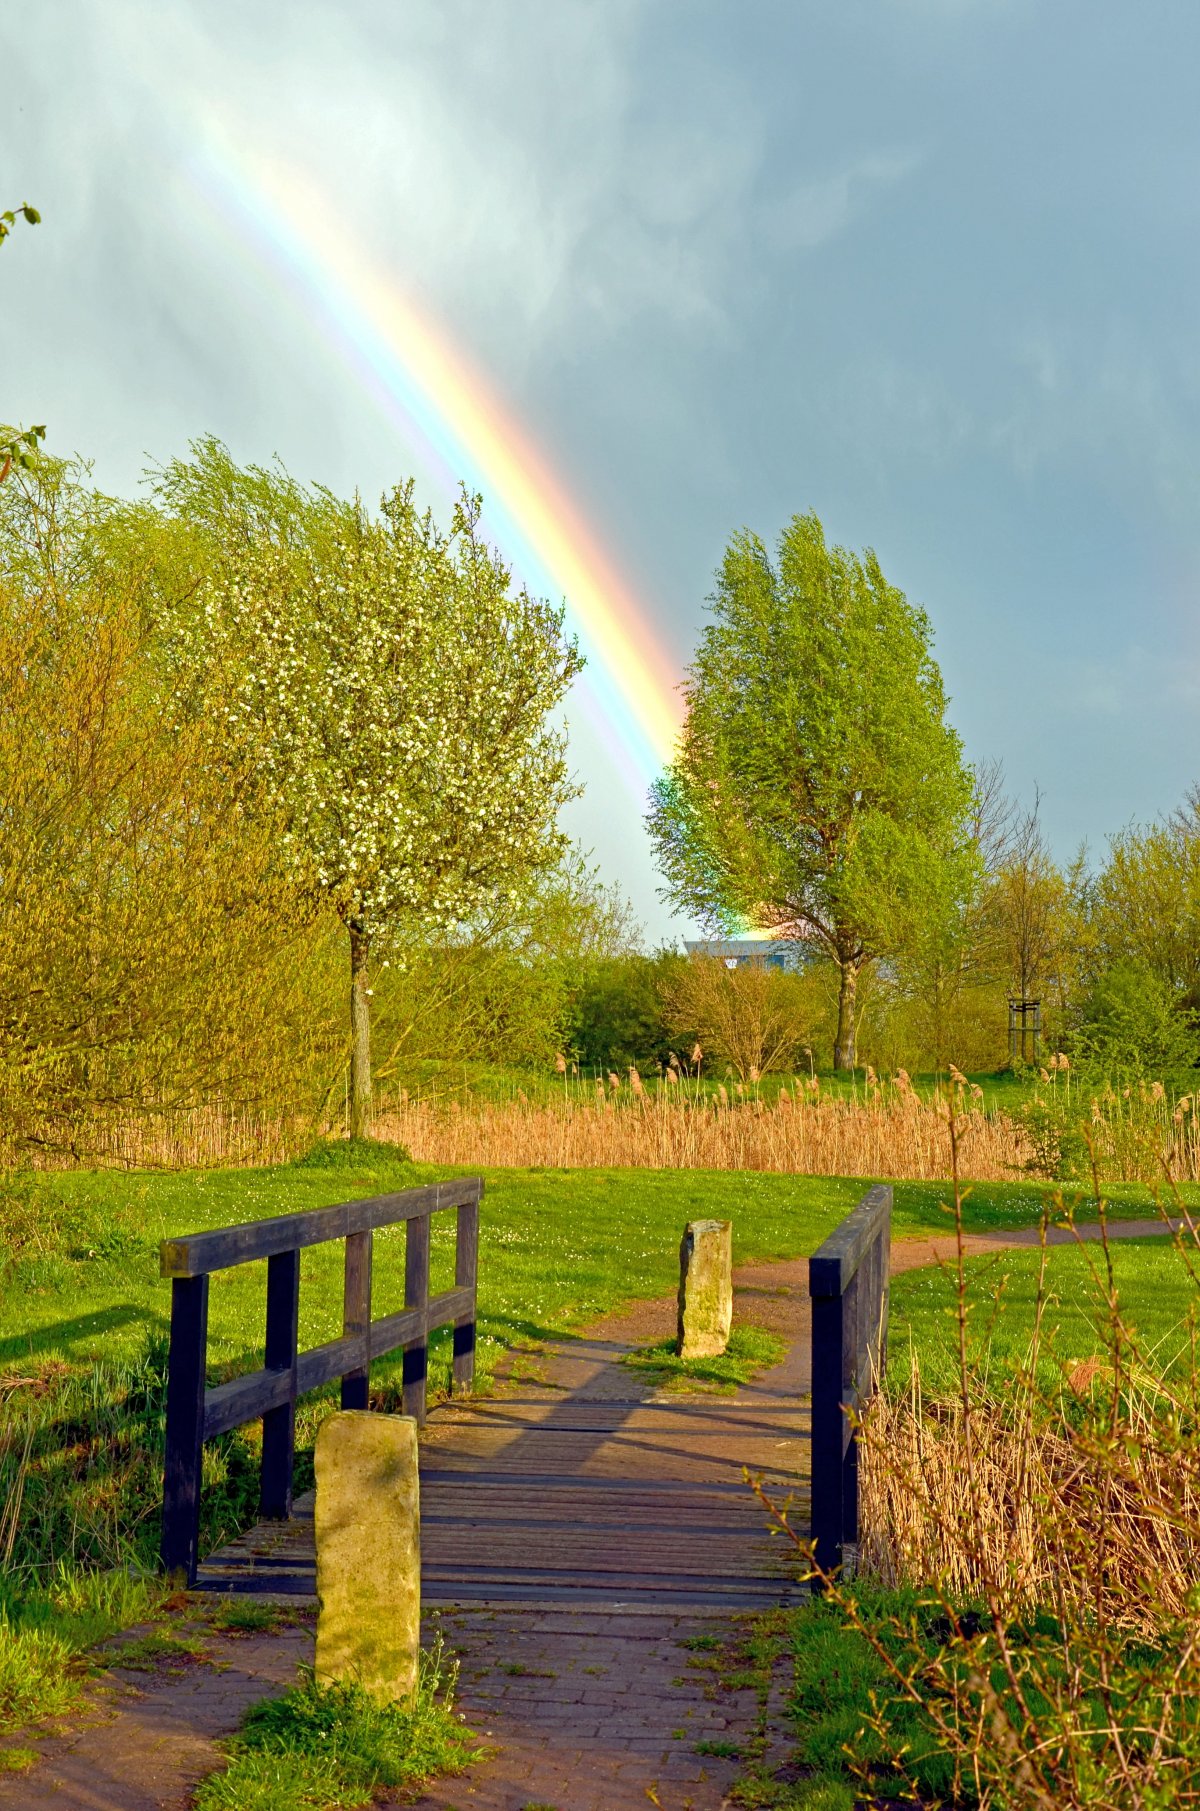 彩虹图片自然风景微信图片